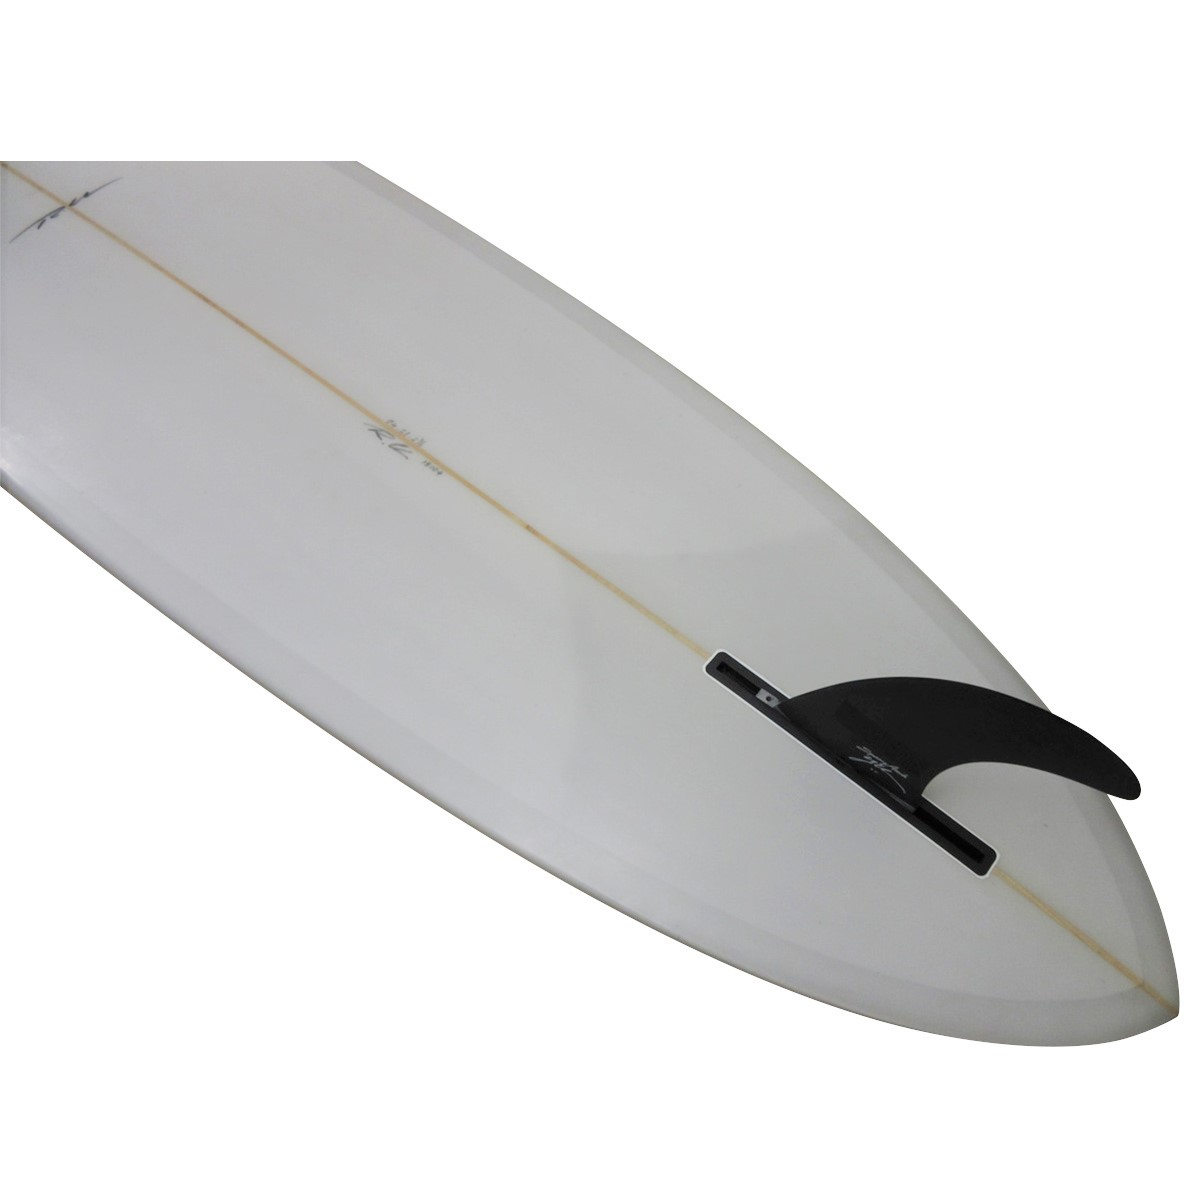 YU SURF CLASSIC / LEAFY 7`4 Shaped by RU